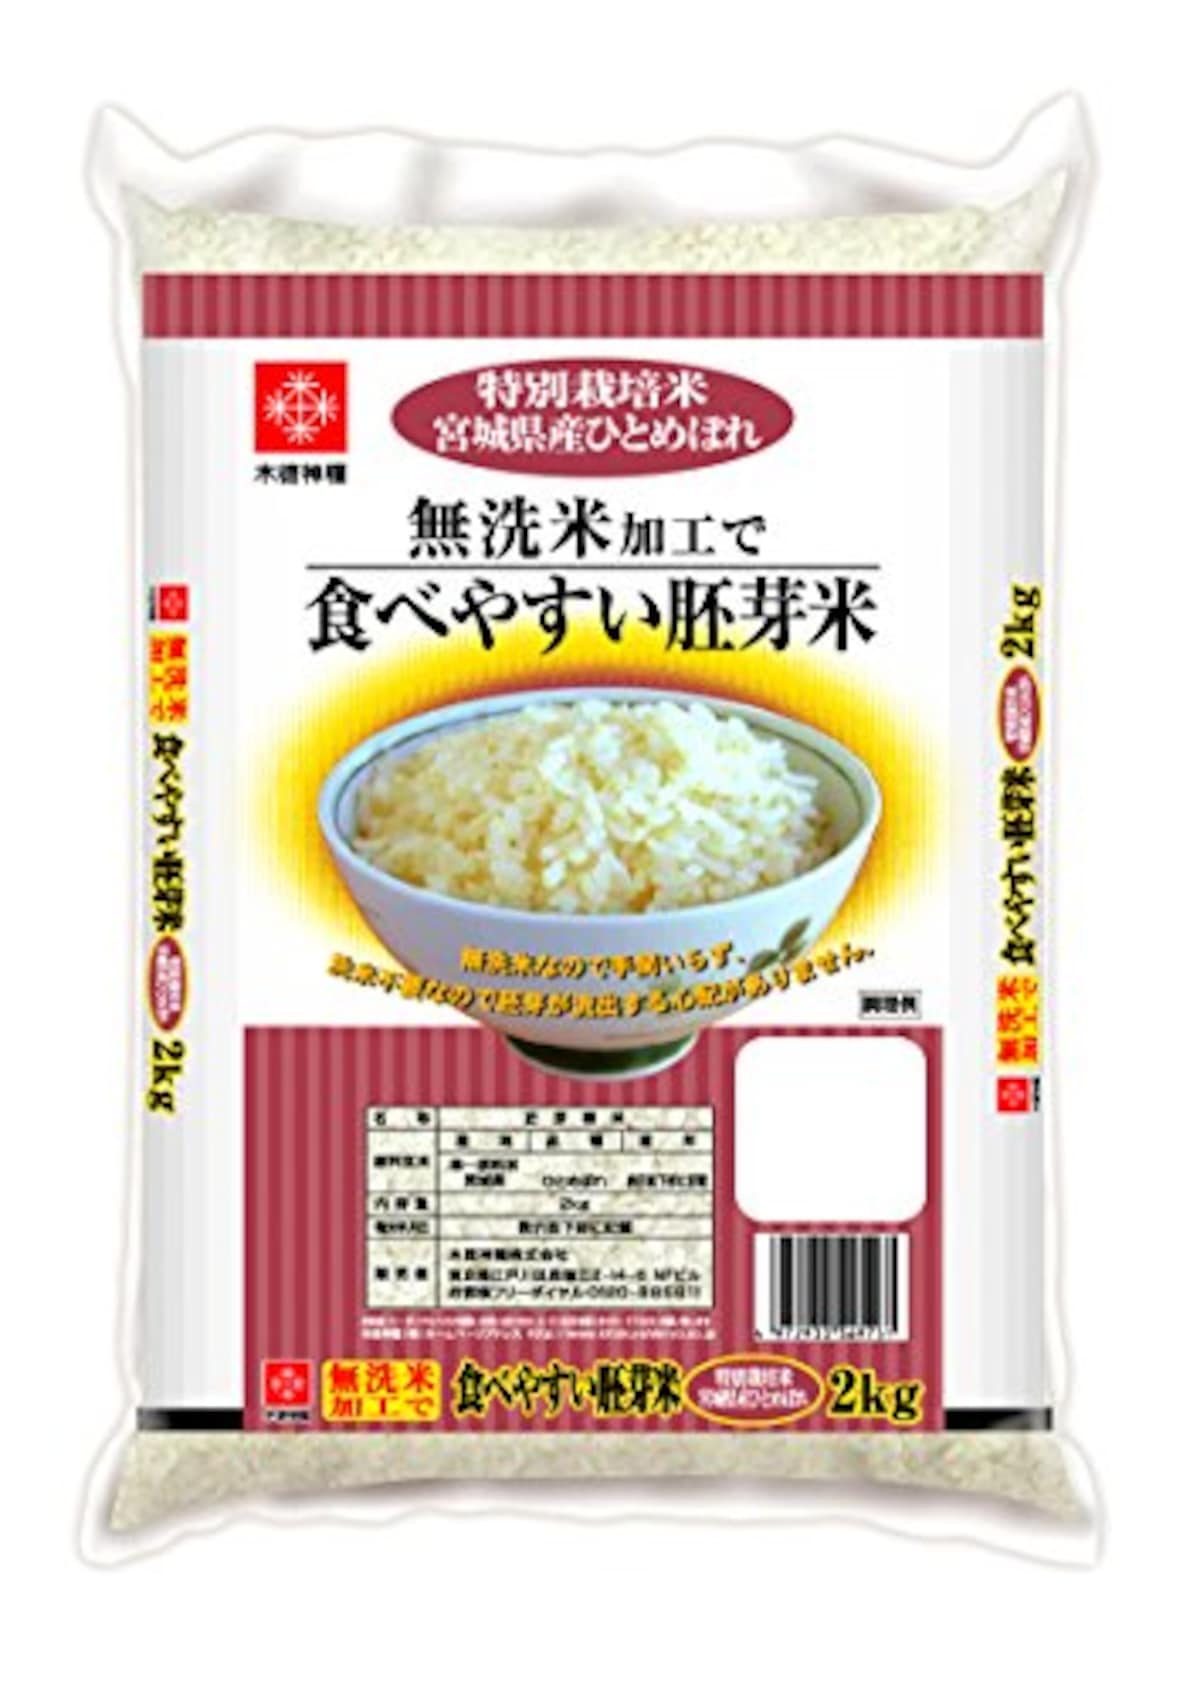 特別栽培米 無洗胚芽米 ひとめぼれ